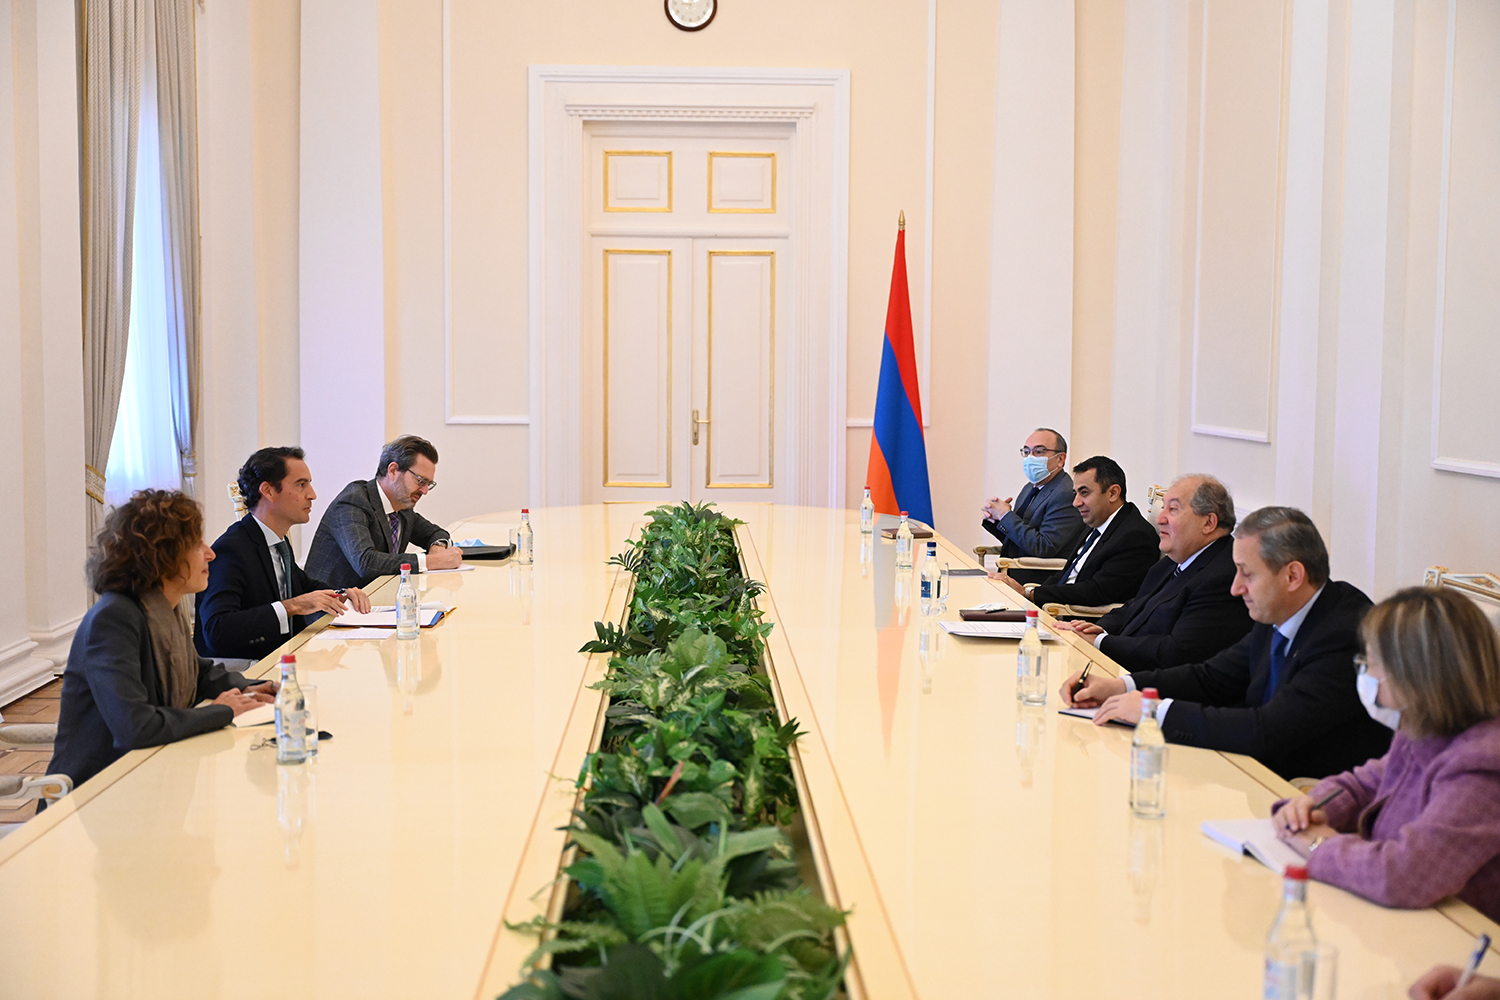 Ermenistan Cumhurbaşkanı, NATO temsicisi Javier Colomina Piriz'i ağırladı